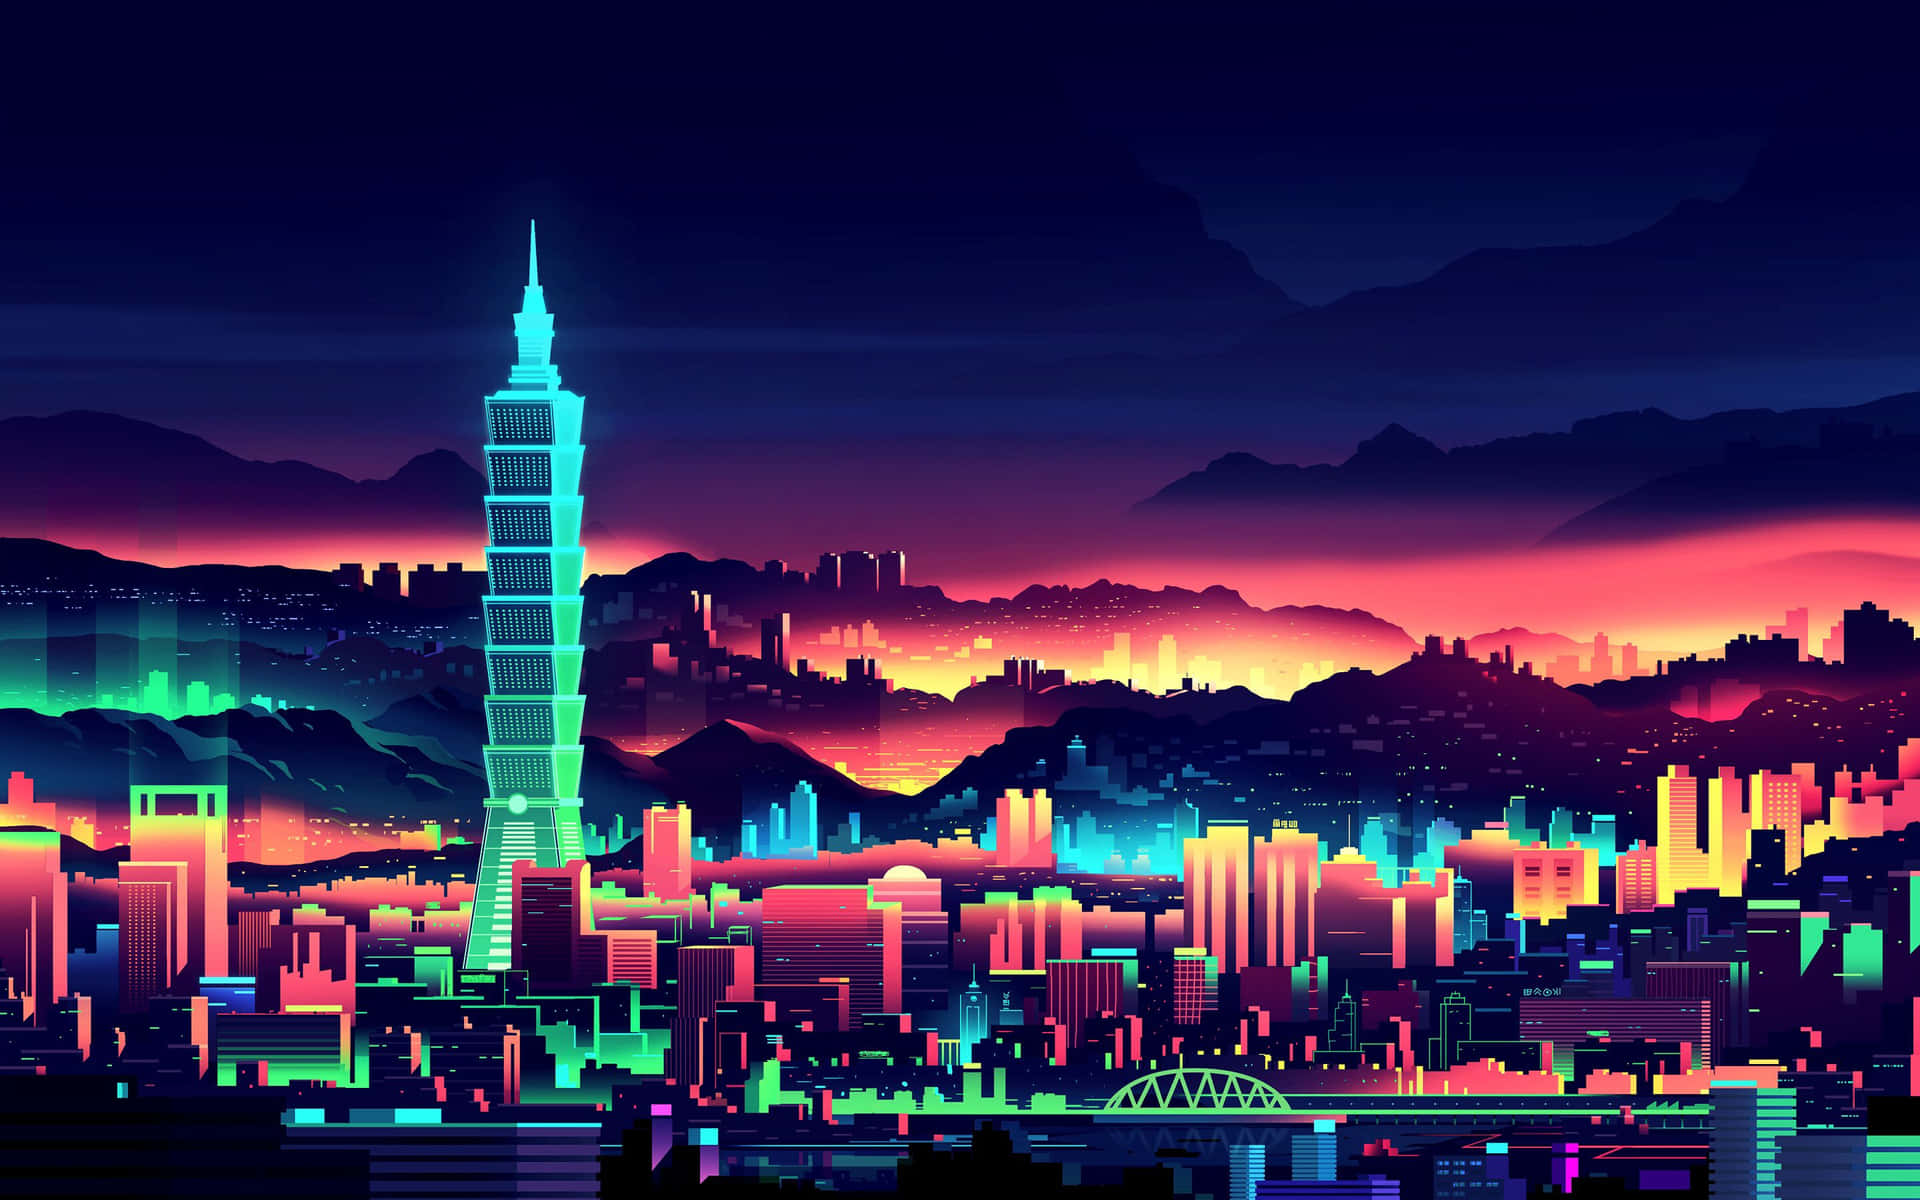 A futuristic cyberpunk pixel art imaginary scene Wallpaper